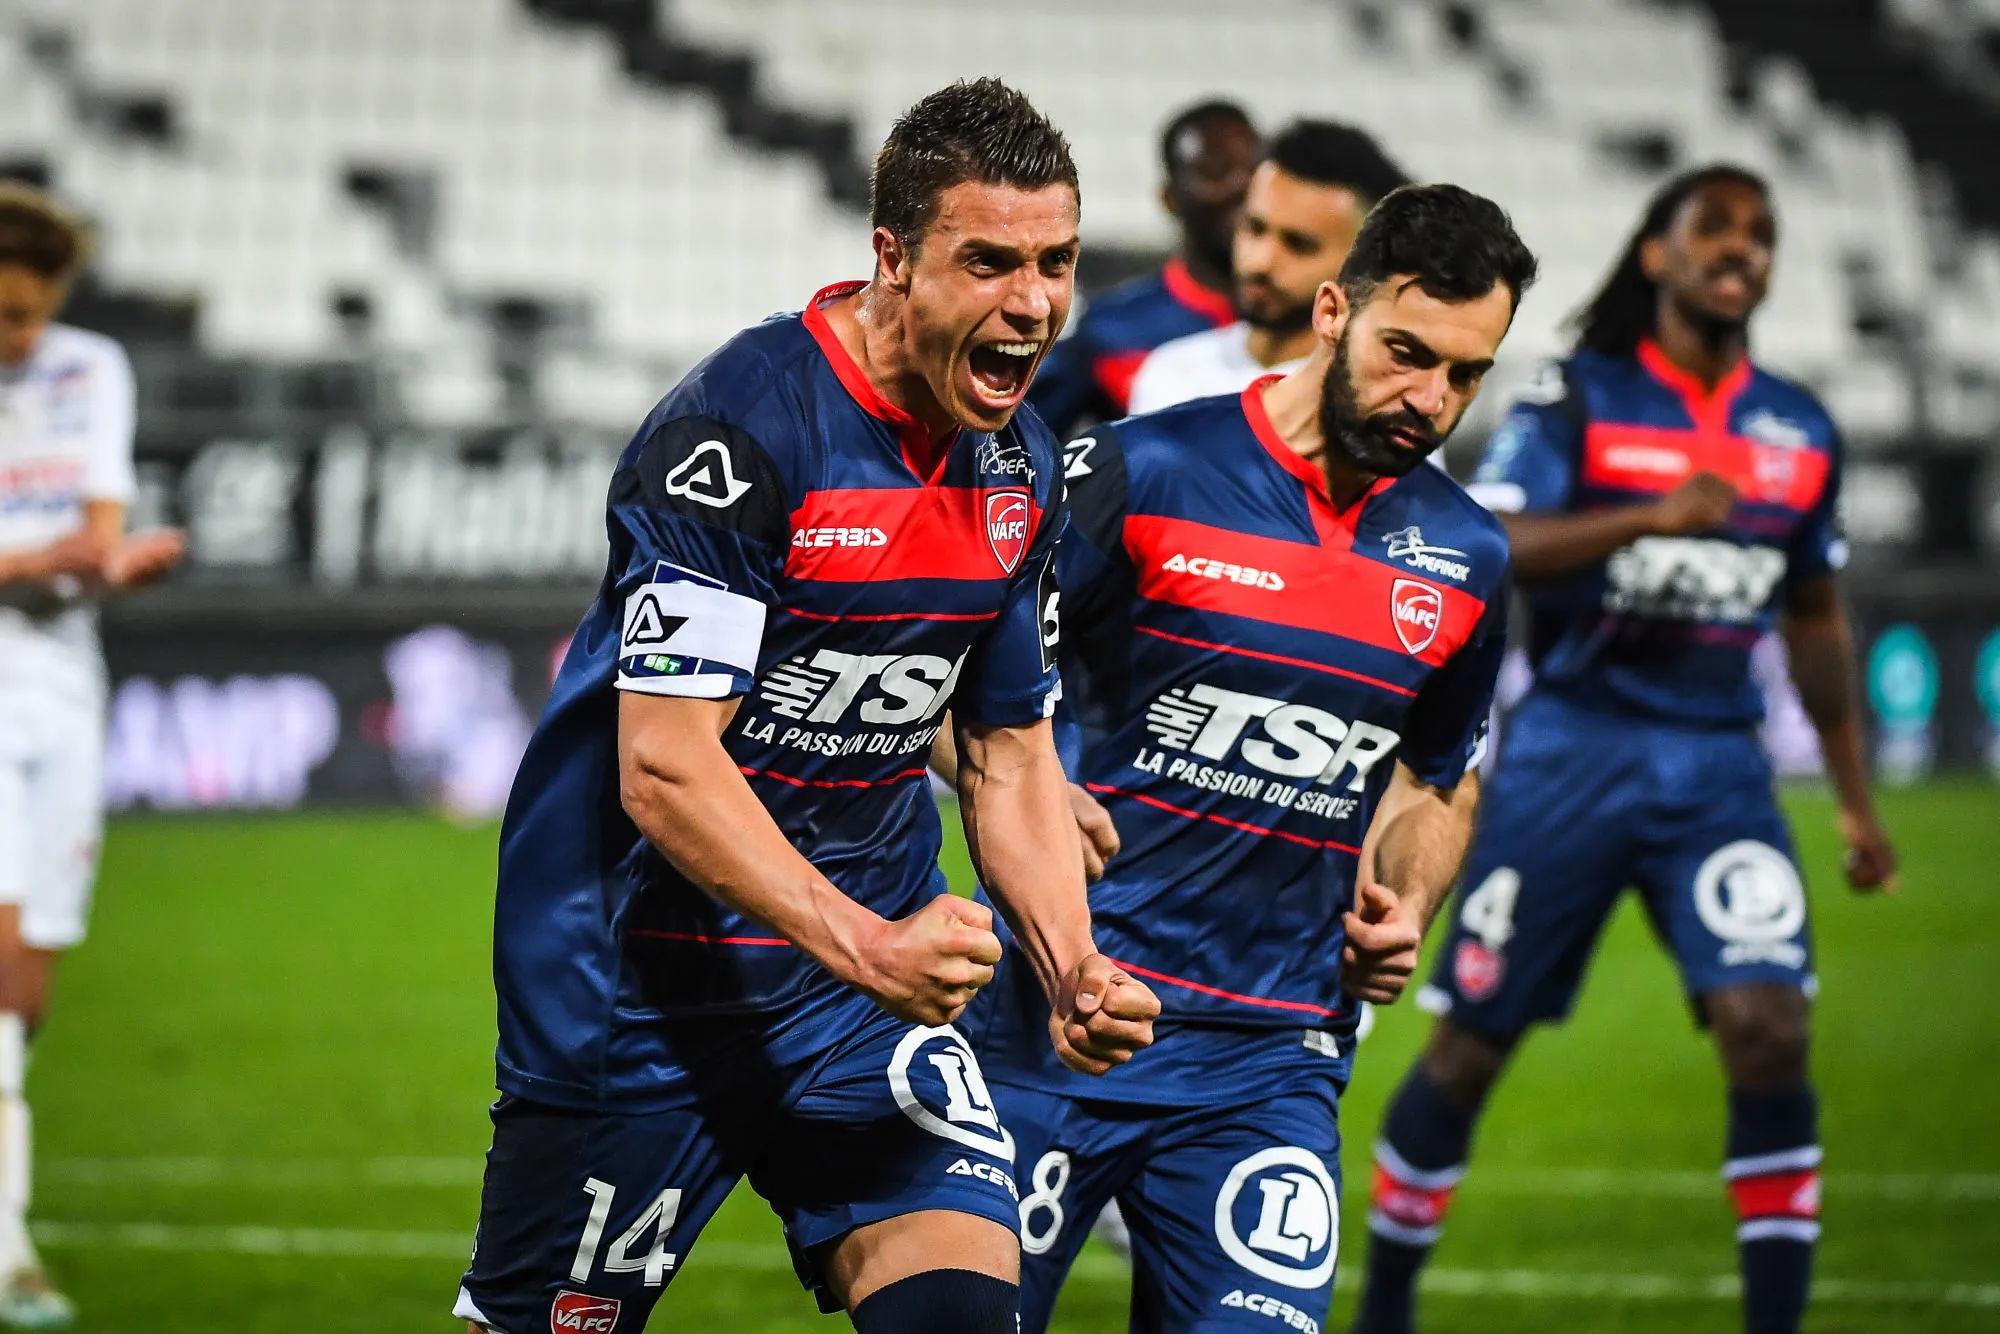 Pronostic Quevilly Rouen Valenciennes : Analyse, cotes et prono du match de Ligue 2